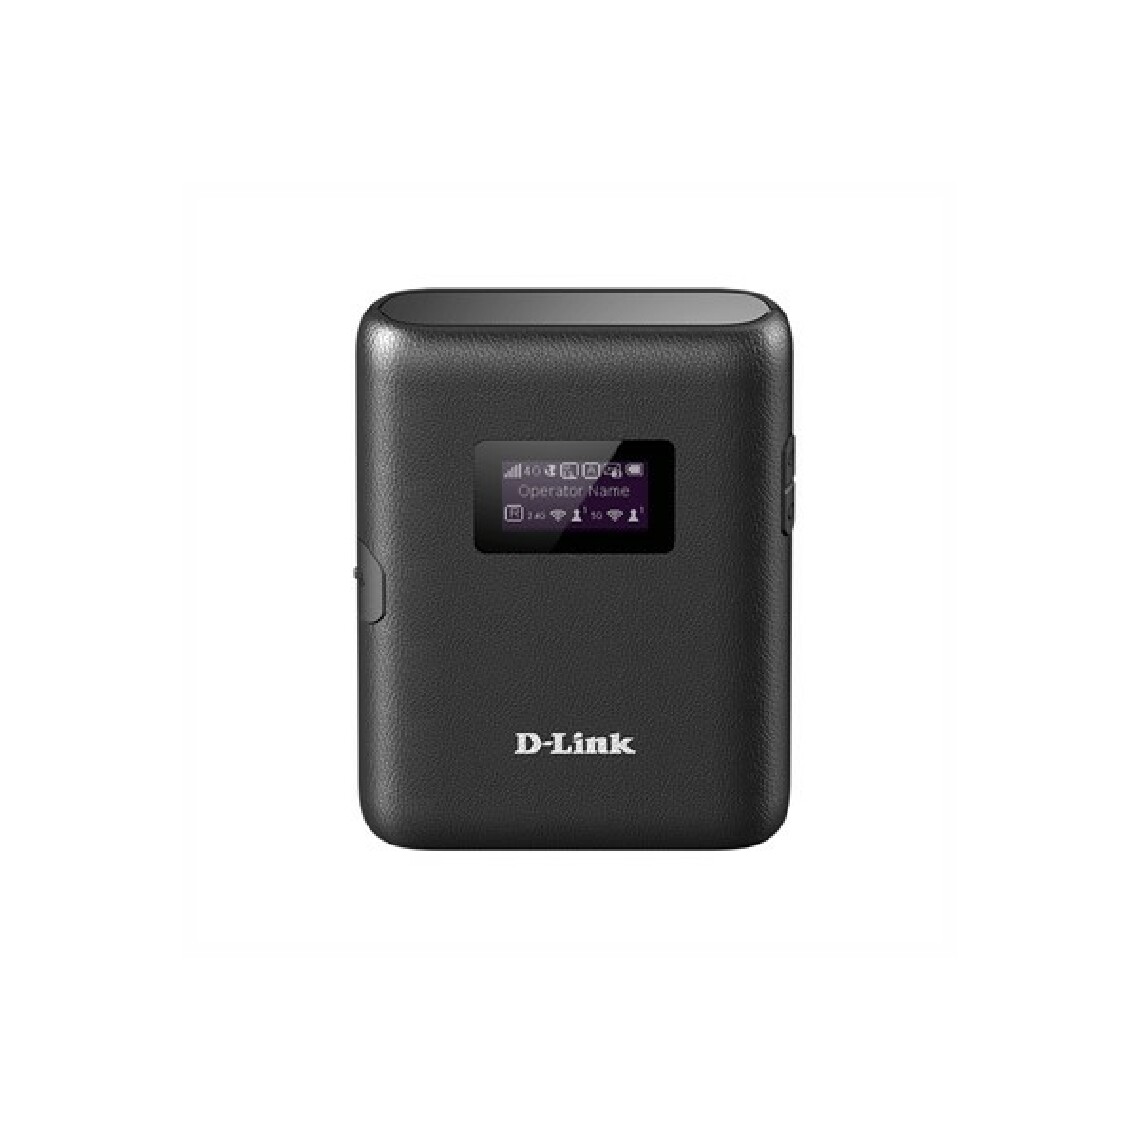 D-Link - Modem sans fil D-Link DWR-933 Noir - Modem / Routeur / Points d'accès